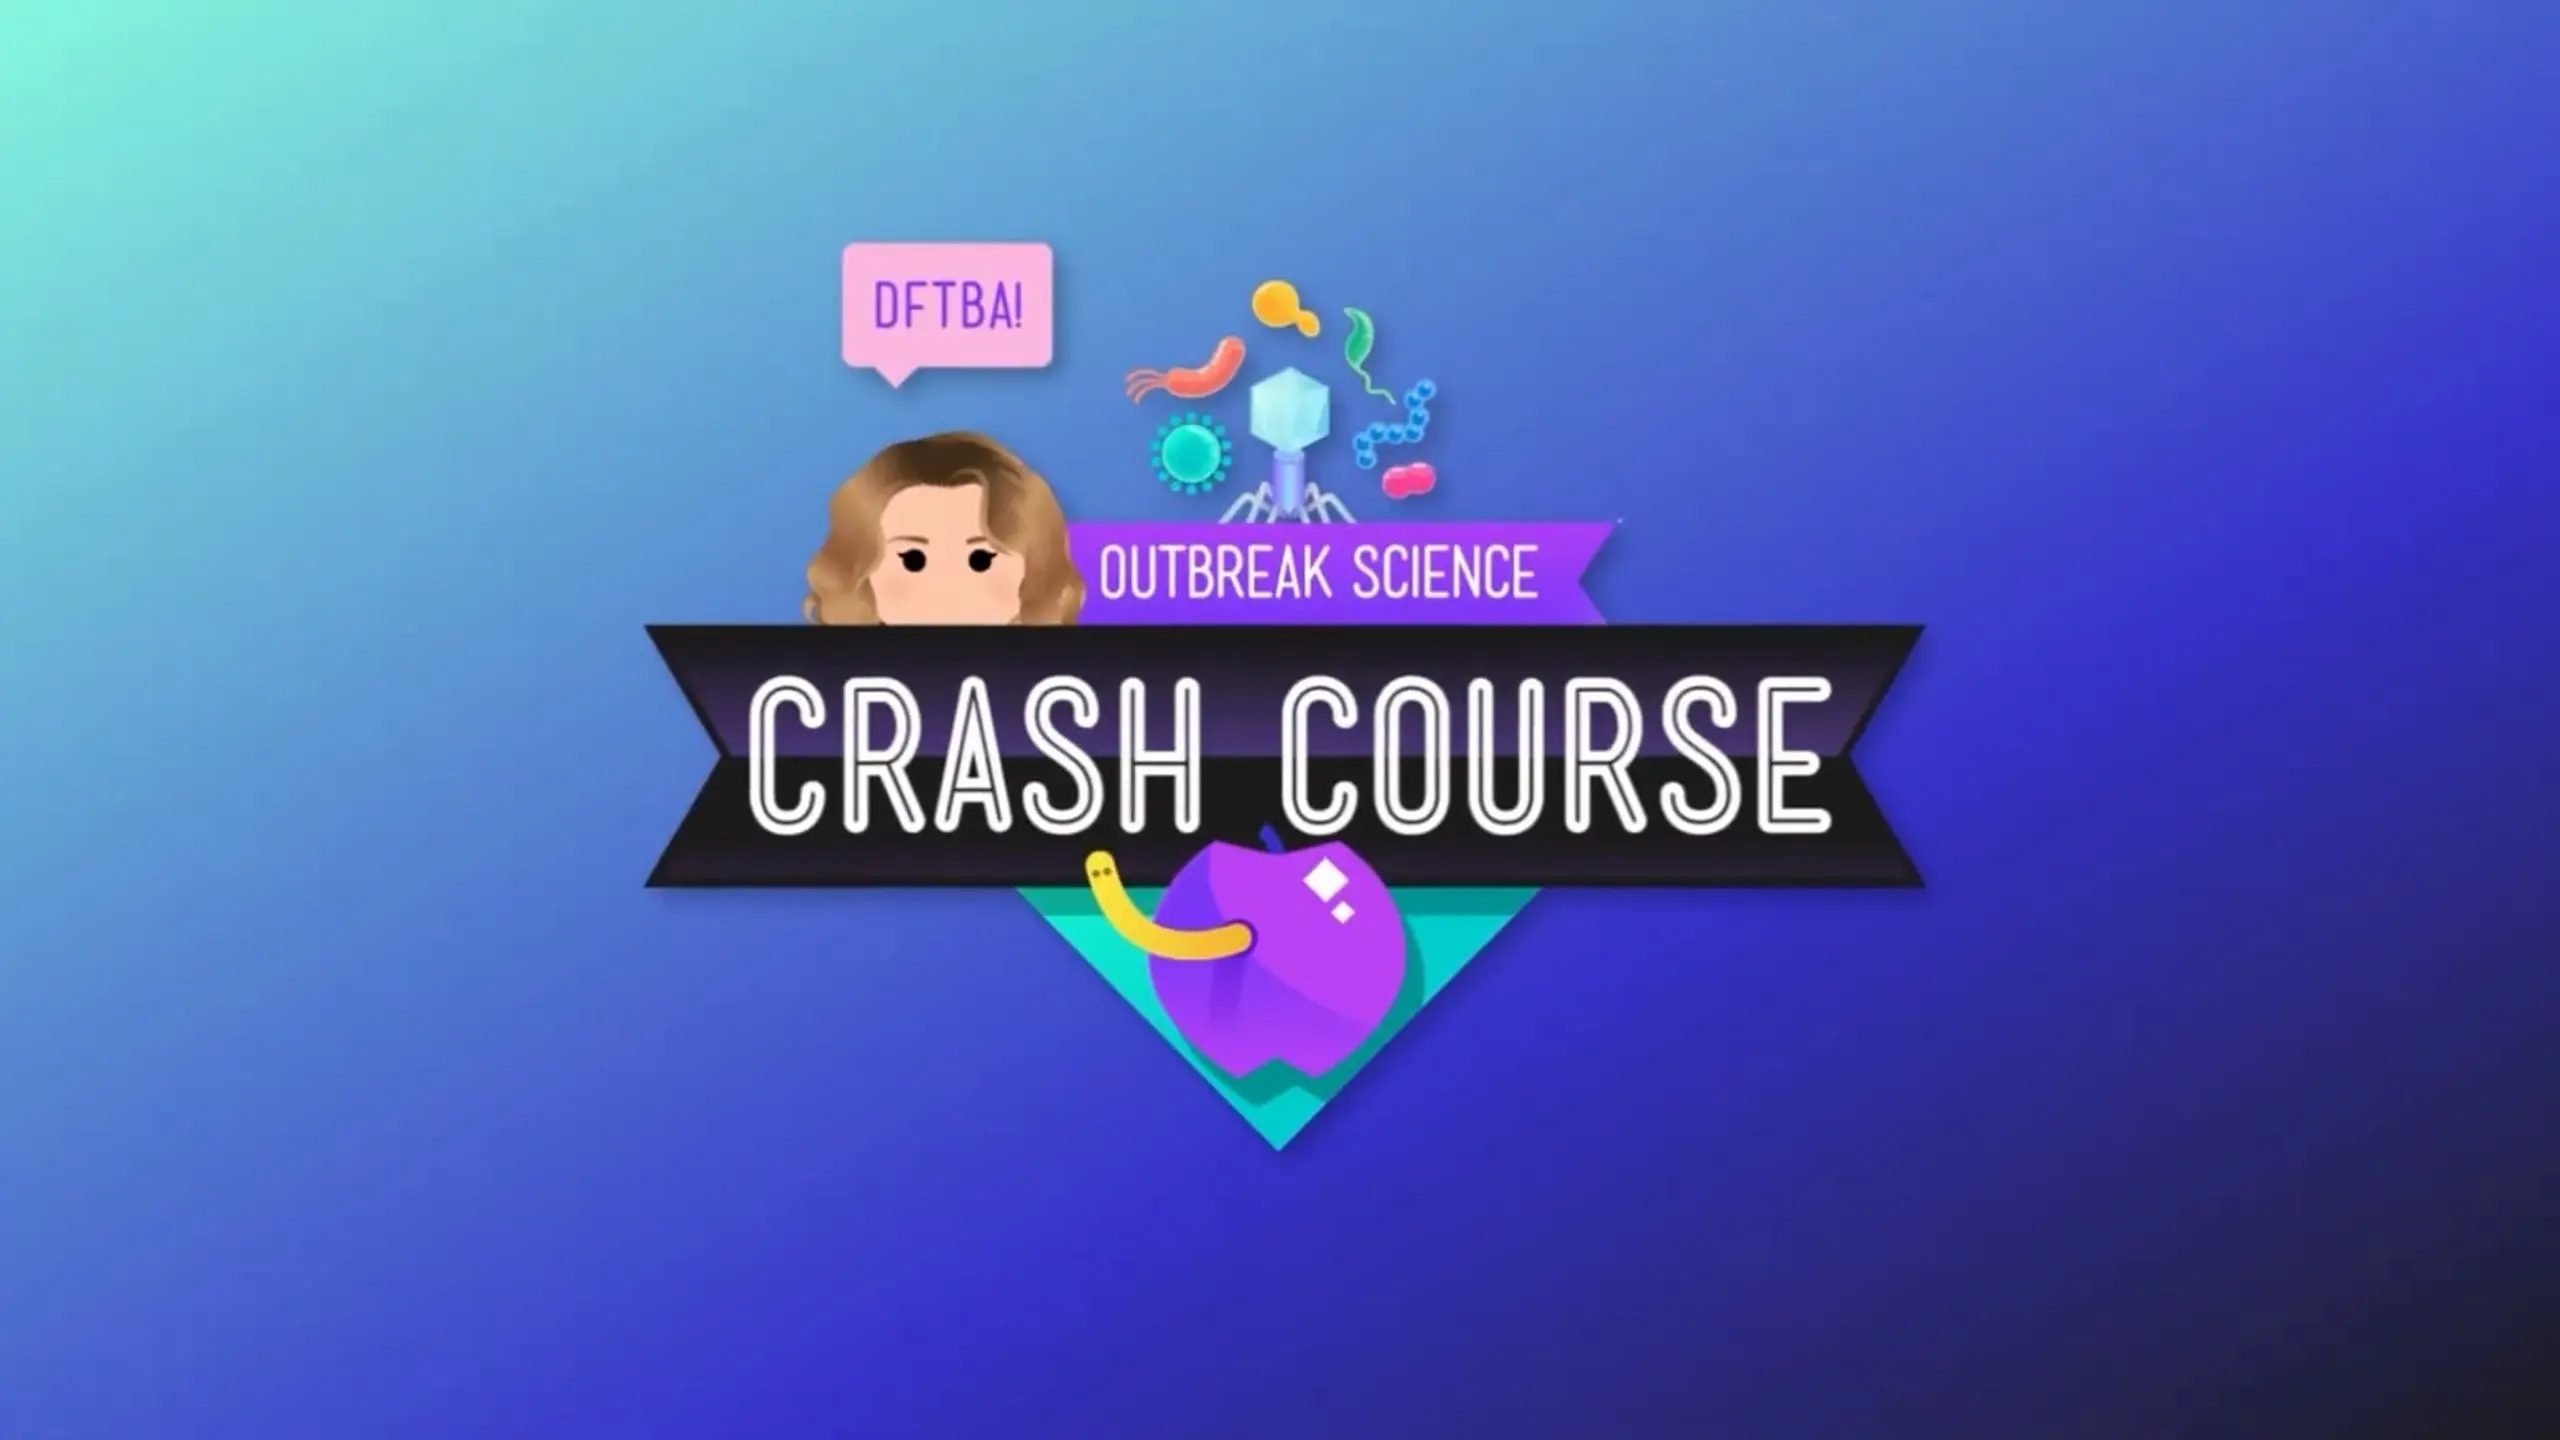 Crash Course Outbreak Science